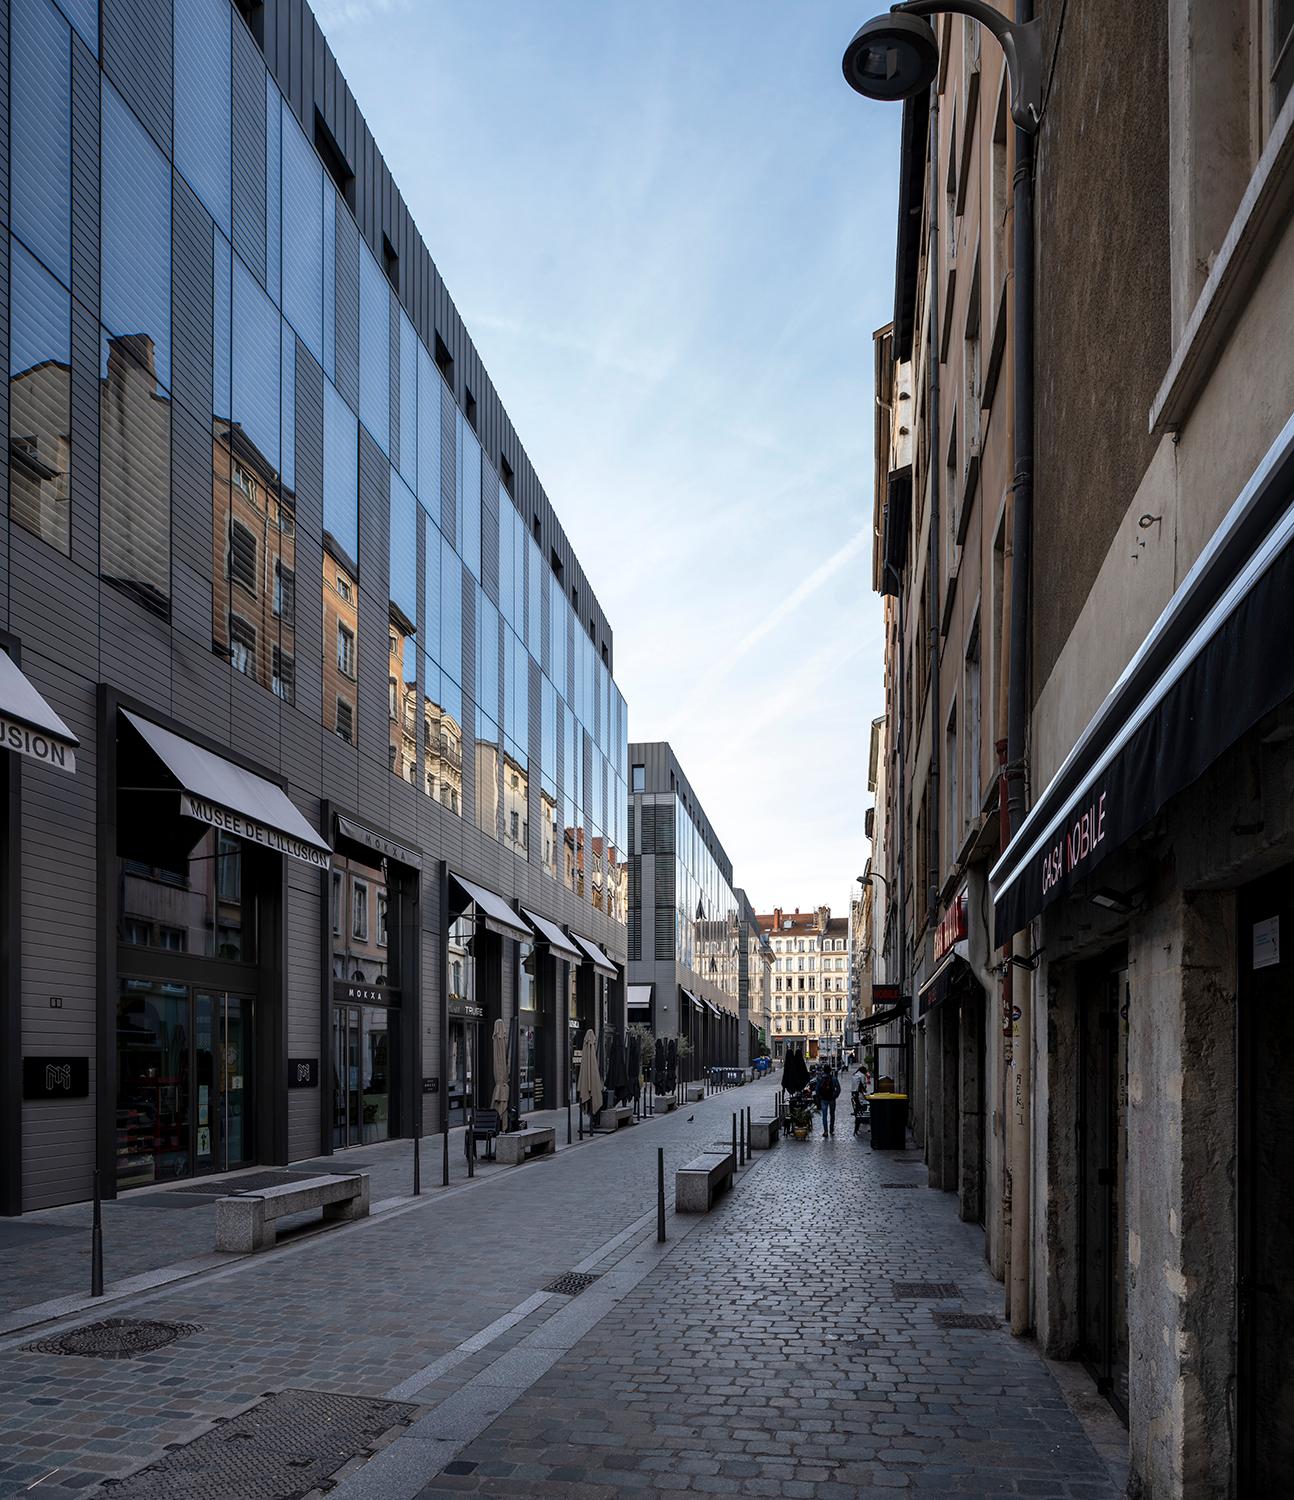 Rue Bourgchanin puis rue Bellecordière